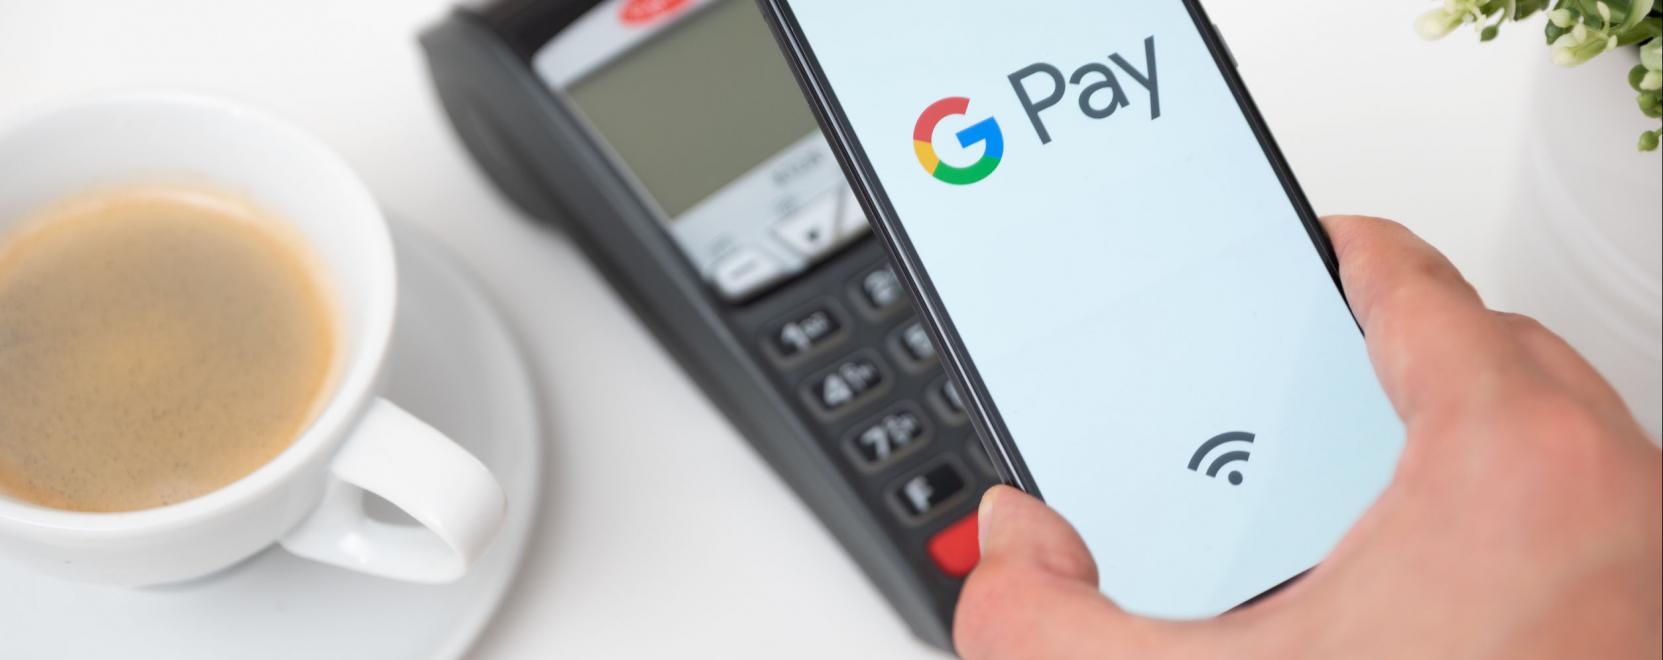 Megérkezett Magyarországra a Google Pay